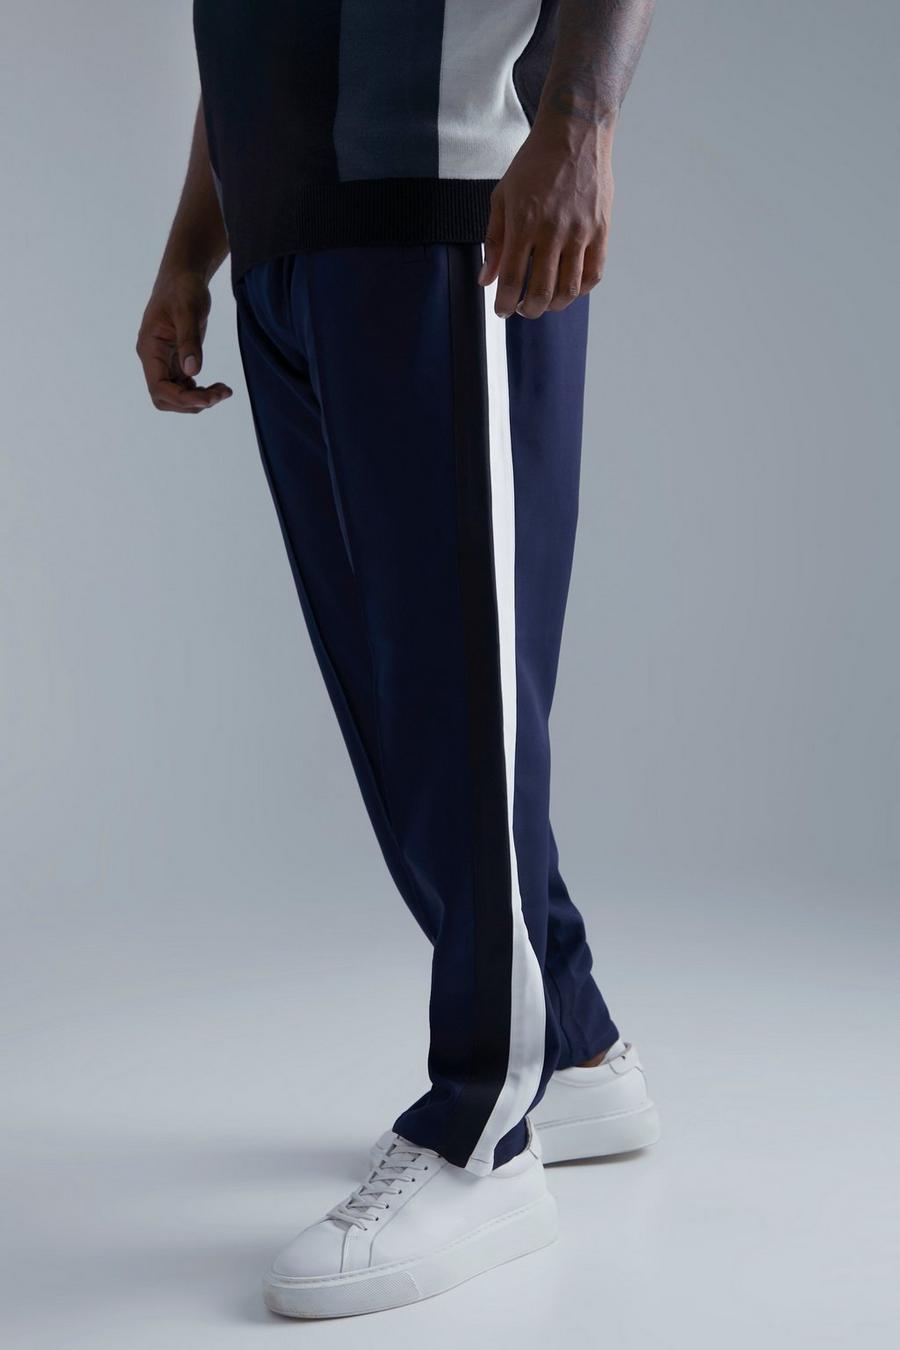 Pantalón Plus entallado con estampado universitario, Navy azul marino